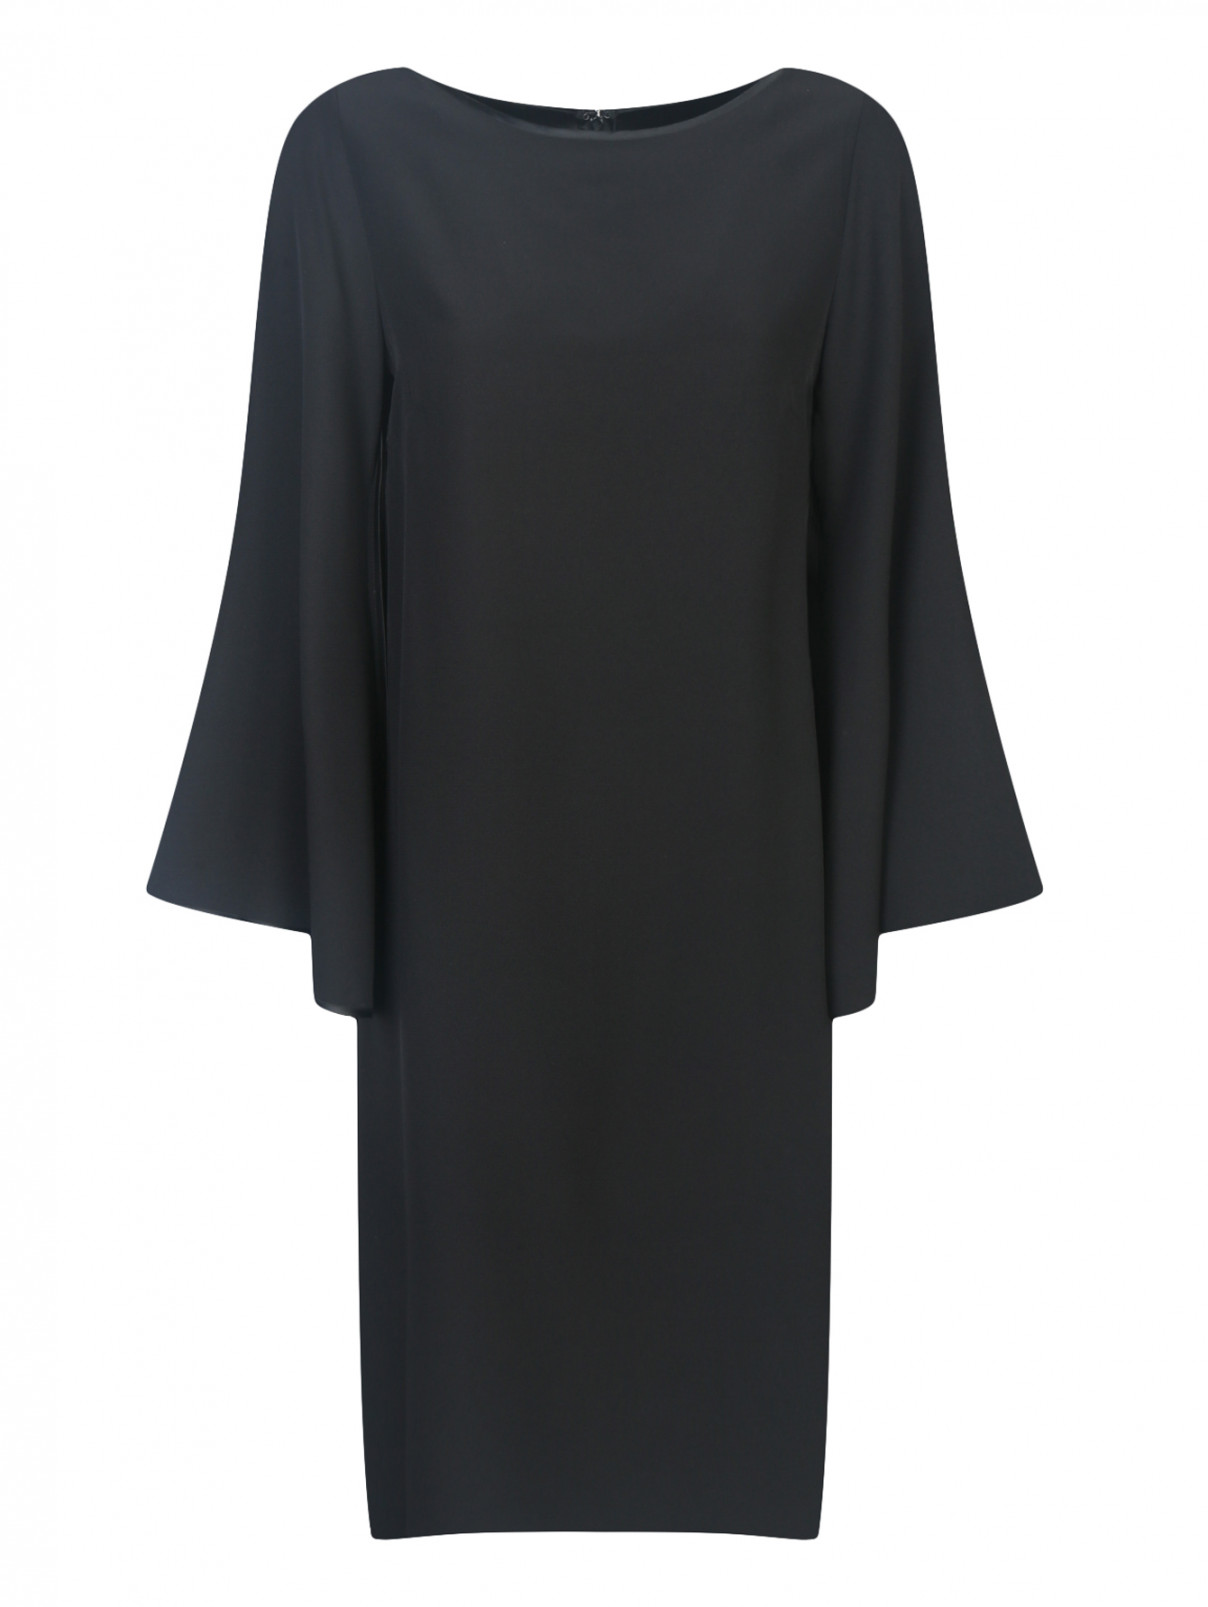 Платье свободного кроя из шелка Daniela de Souza  –  Общий вид  – Цвет:  Черный